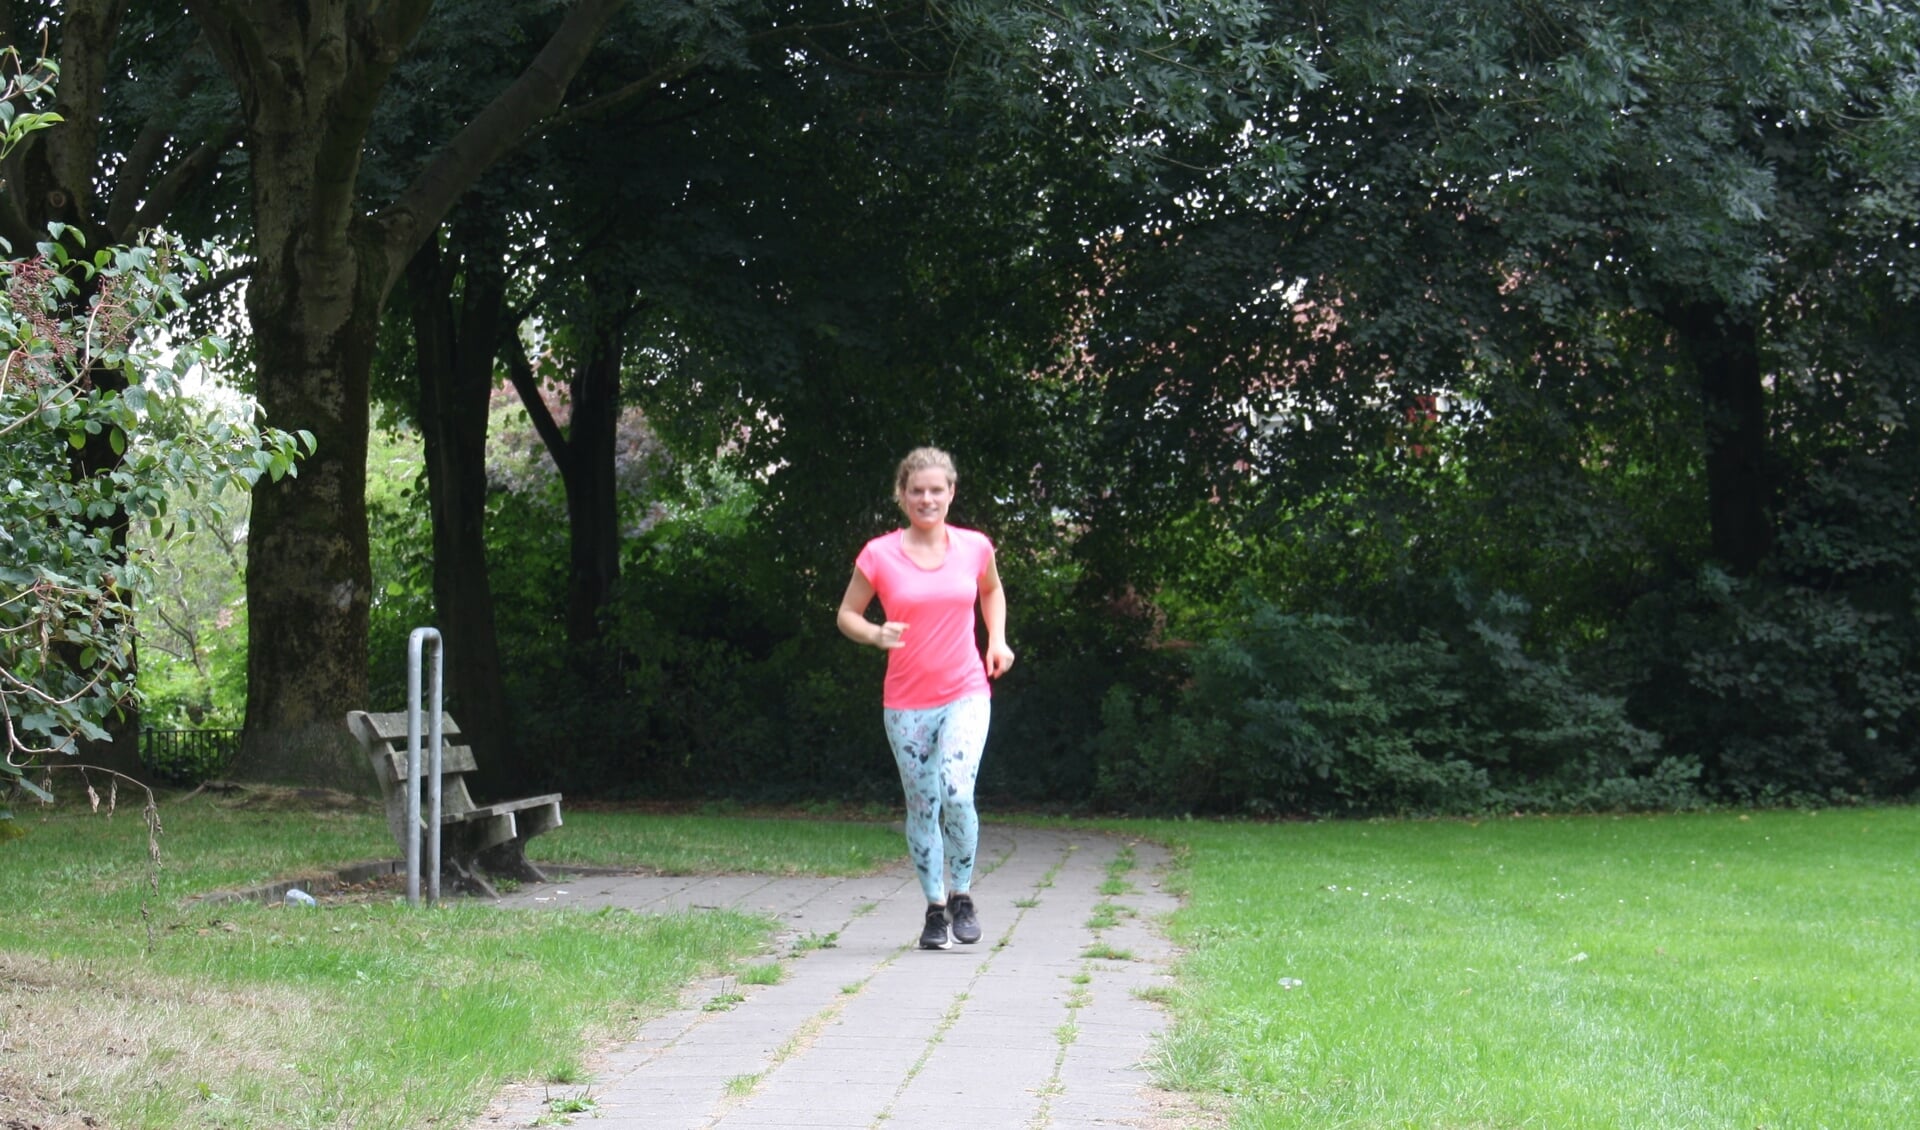 ,,Begeleiding van Runlaxing is maatwerk'', vindt eigenaresse Kamilla Neplenbroek.